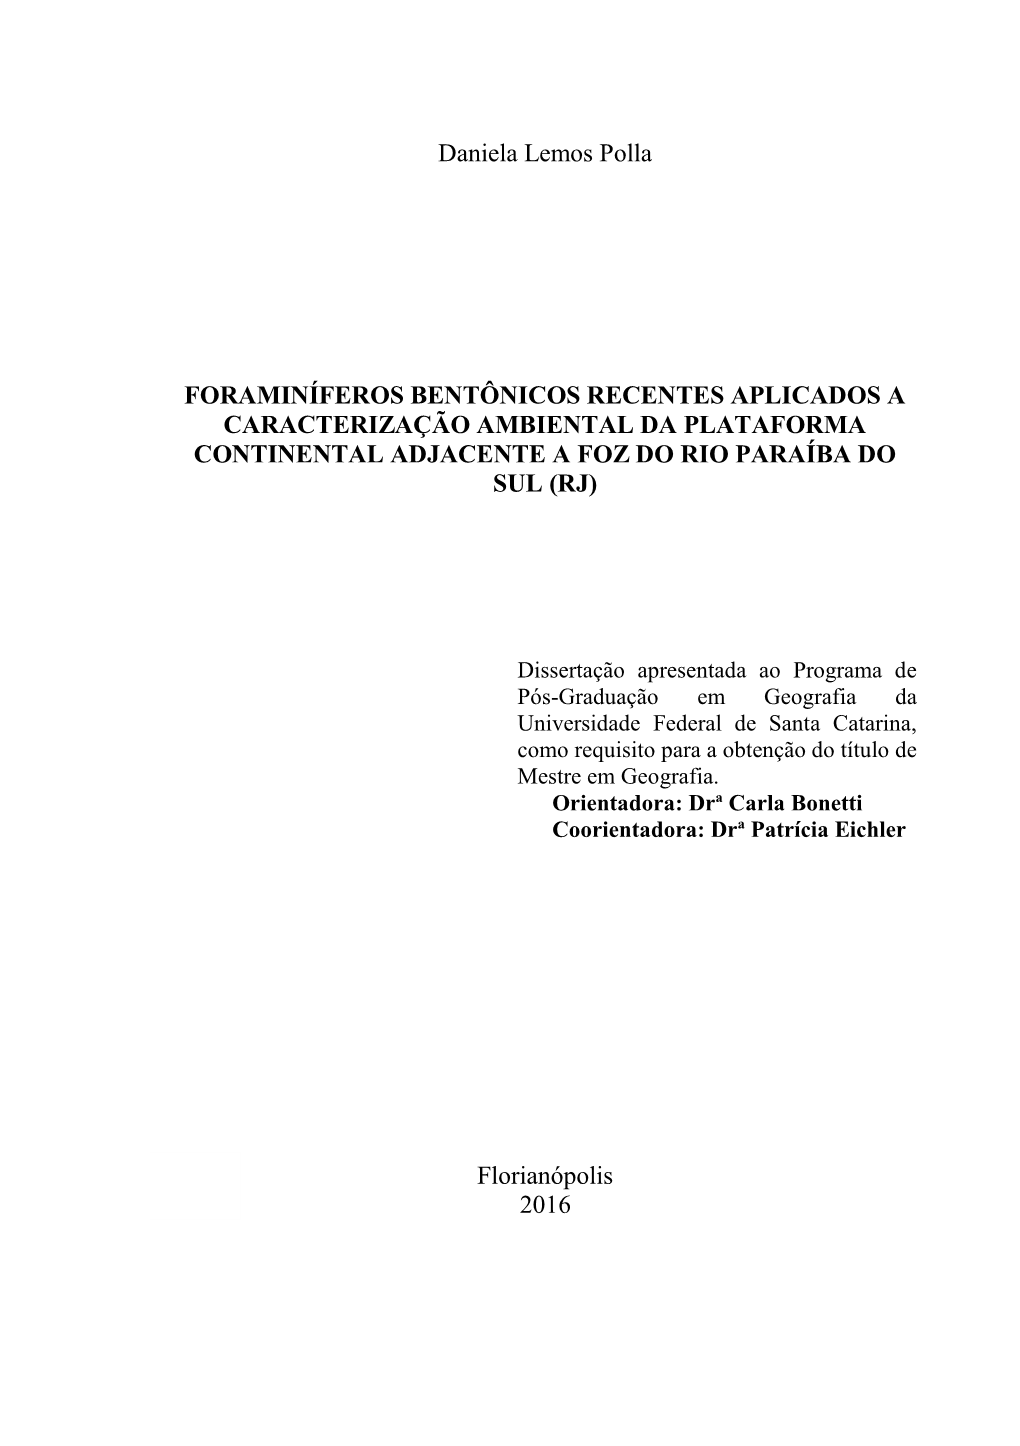 Universidade Federal De Santa Catarina, Como Requisito Para a Obtenção Do Título De Mestre Em Geografia